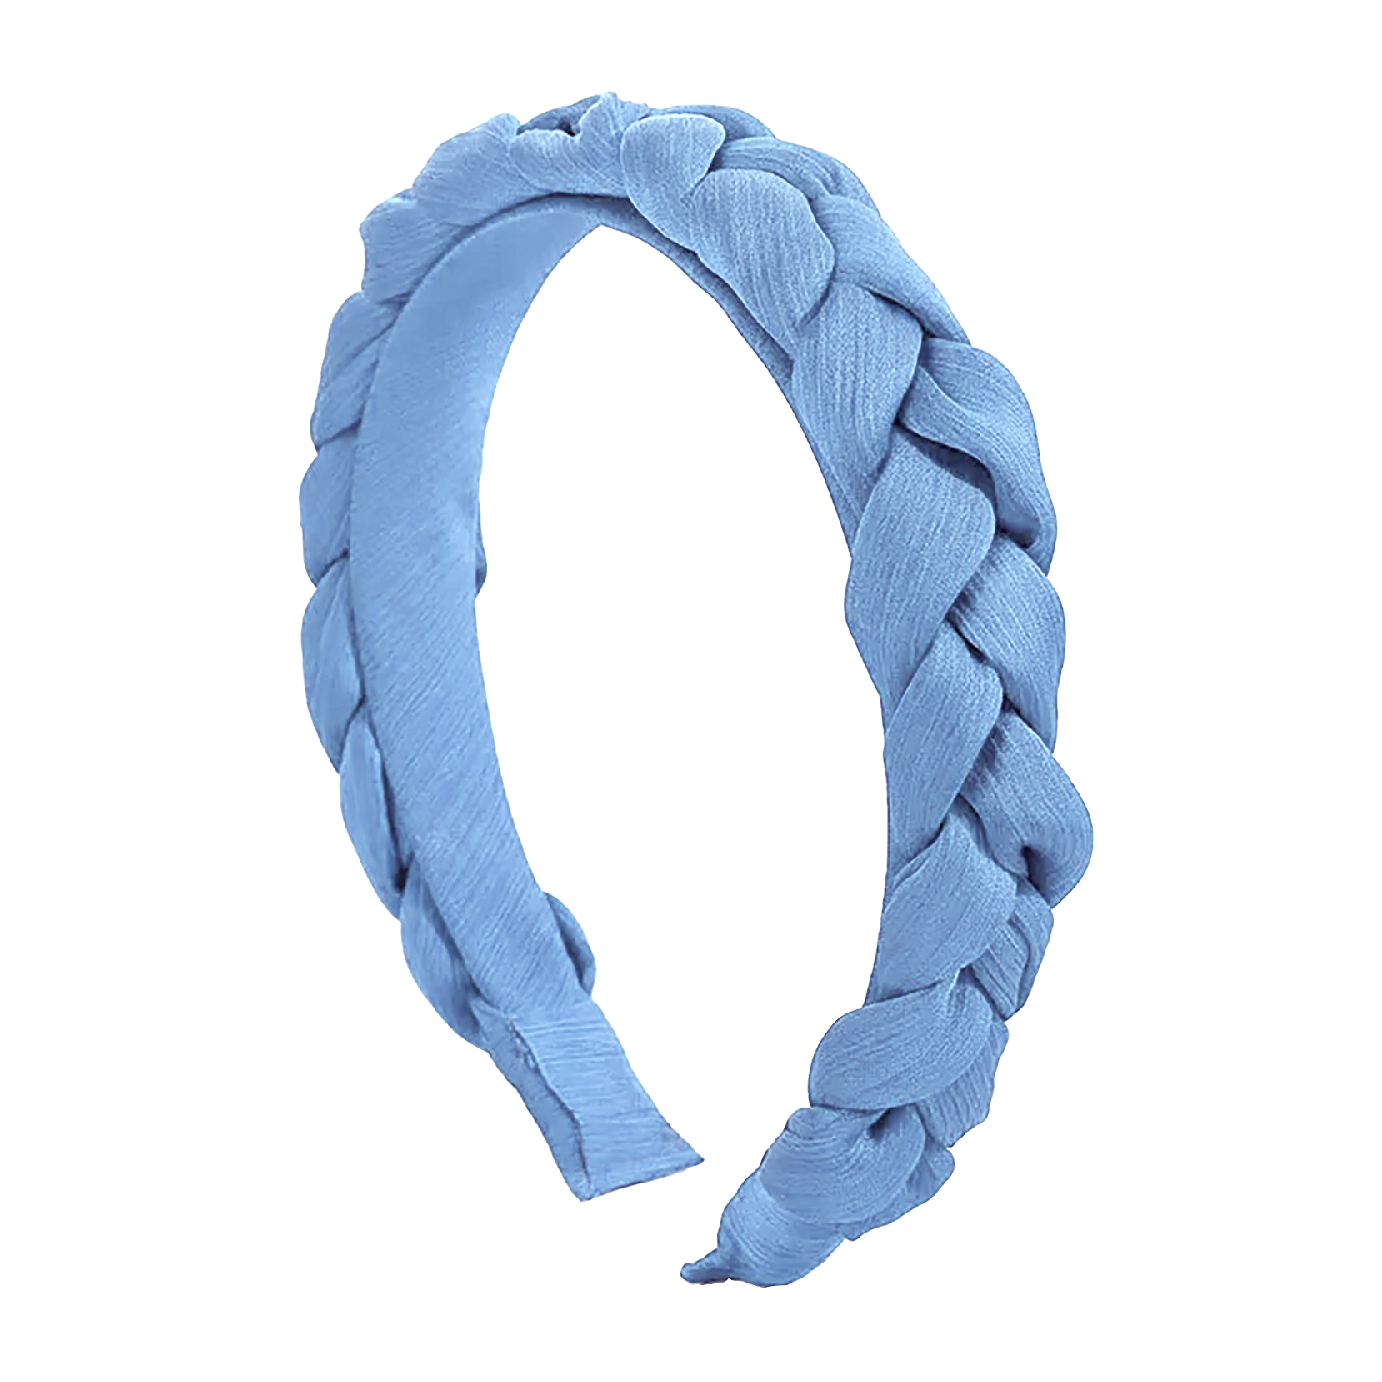 'Olivia' Crepe Braided Headband in Light Blue